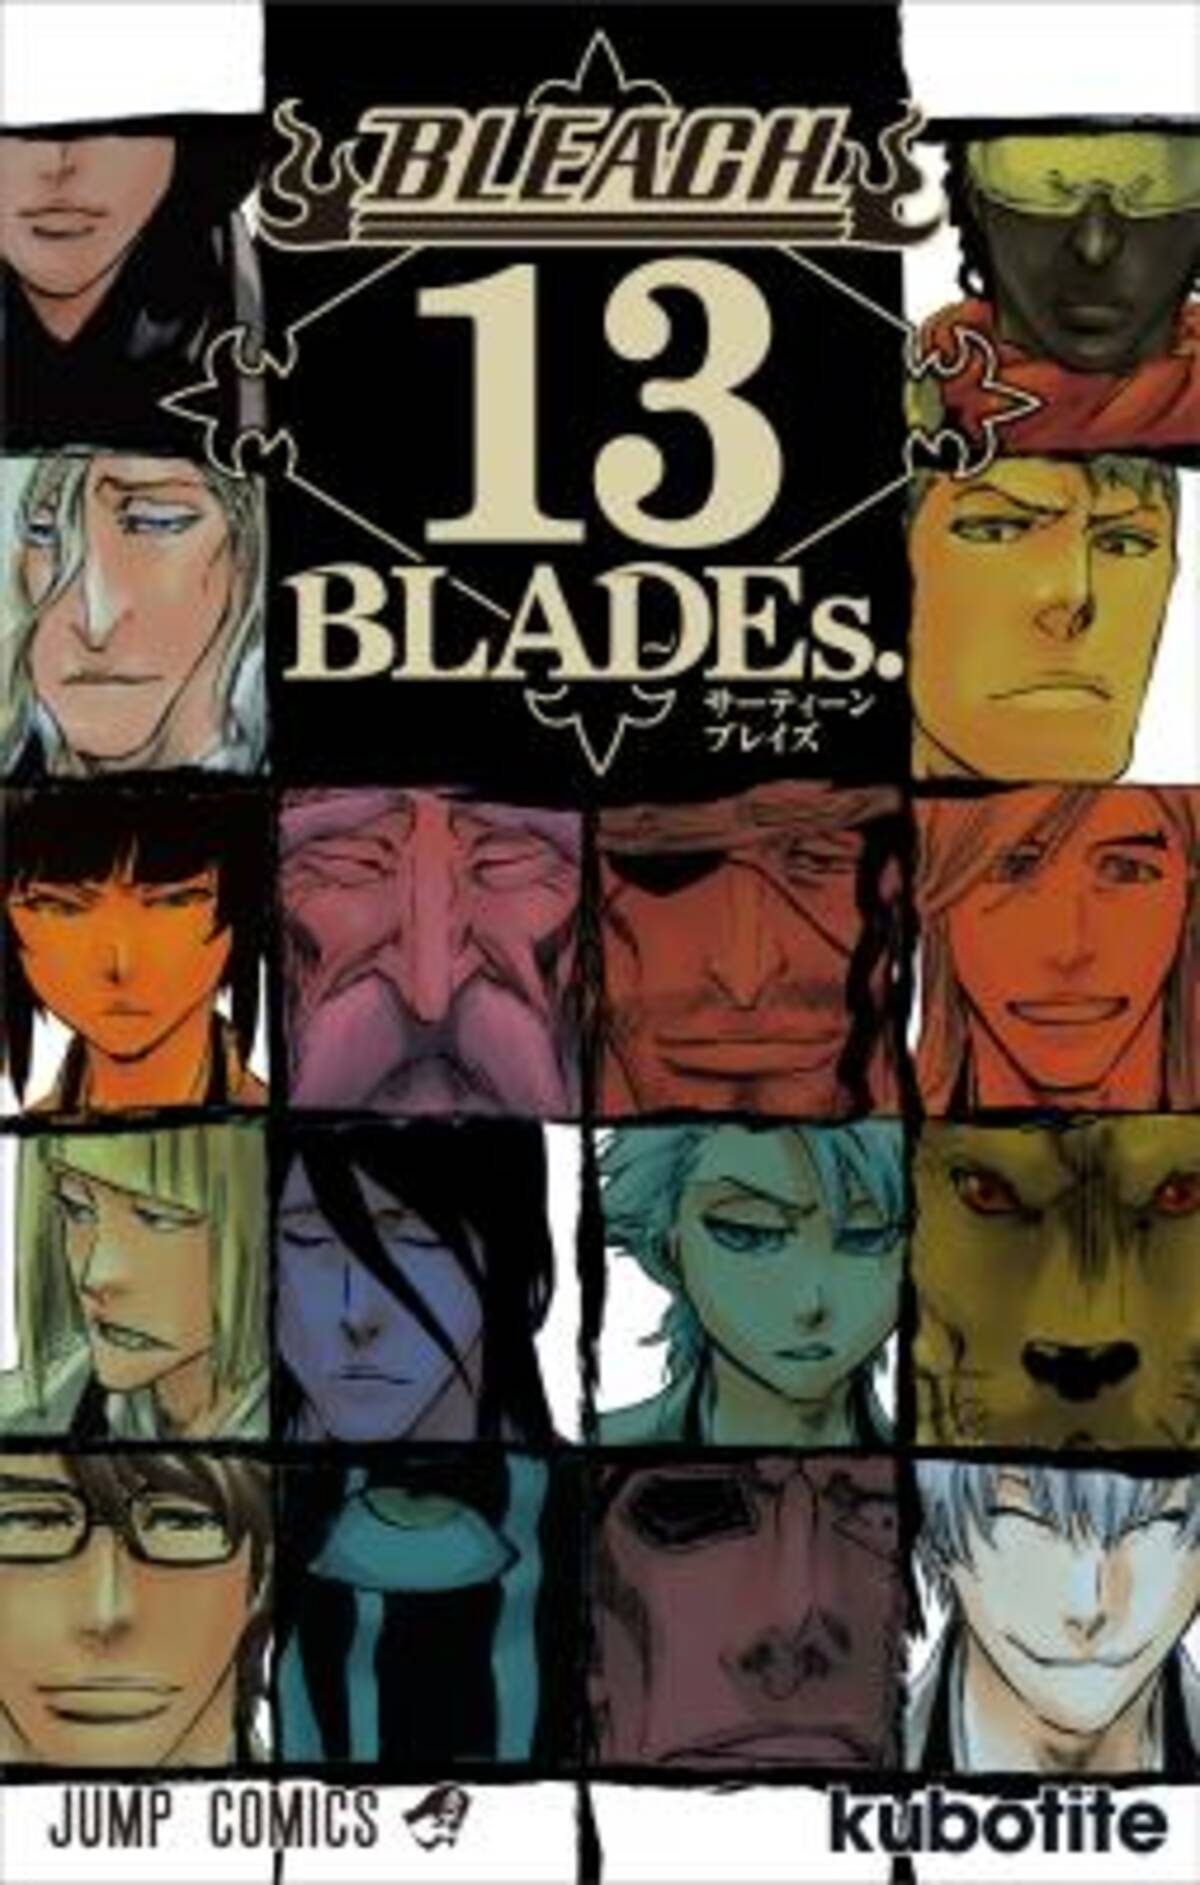 Bleach 連載13周年記念 護廷十三隊の面々ら 死神 だけに特化したファンブック Bleach 13 Blades 著 久保帯人 が8月4日 火 に発売 15年8月3日 エキサイトニュース